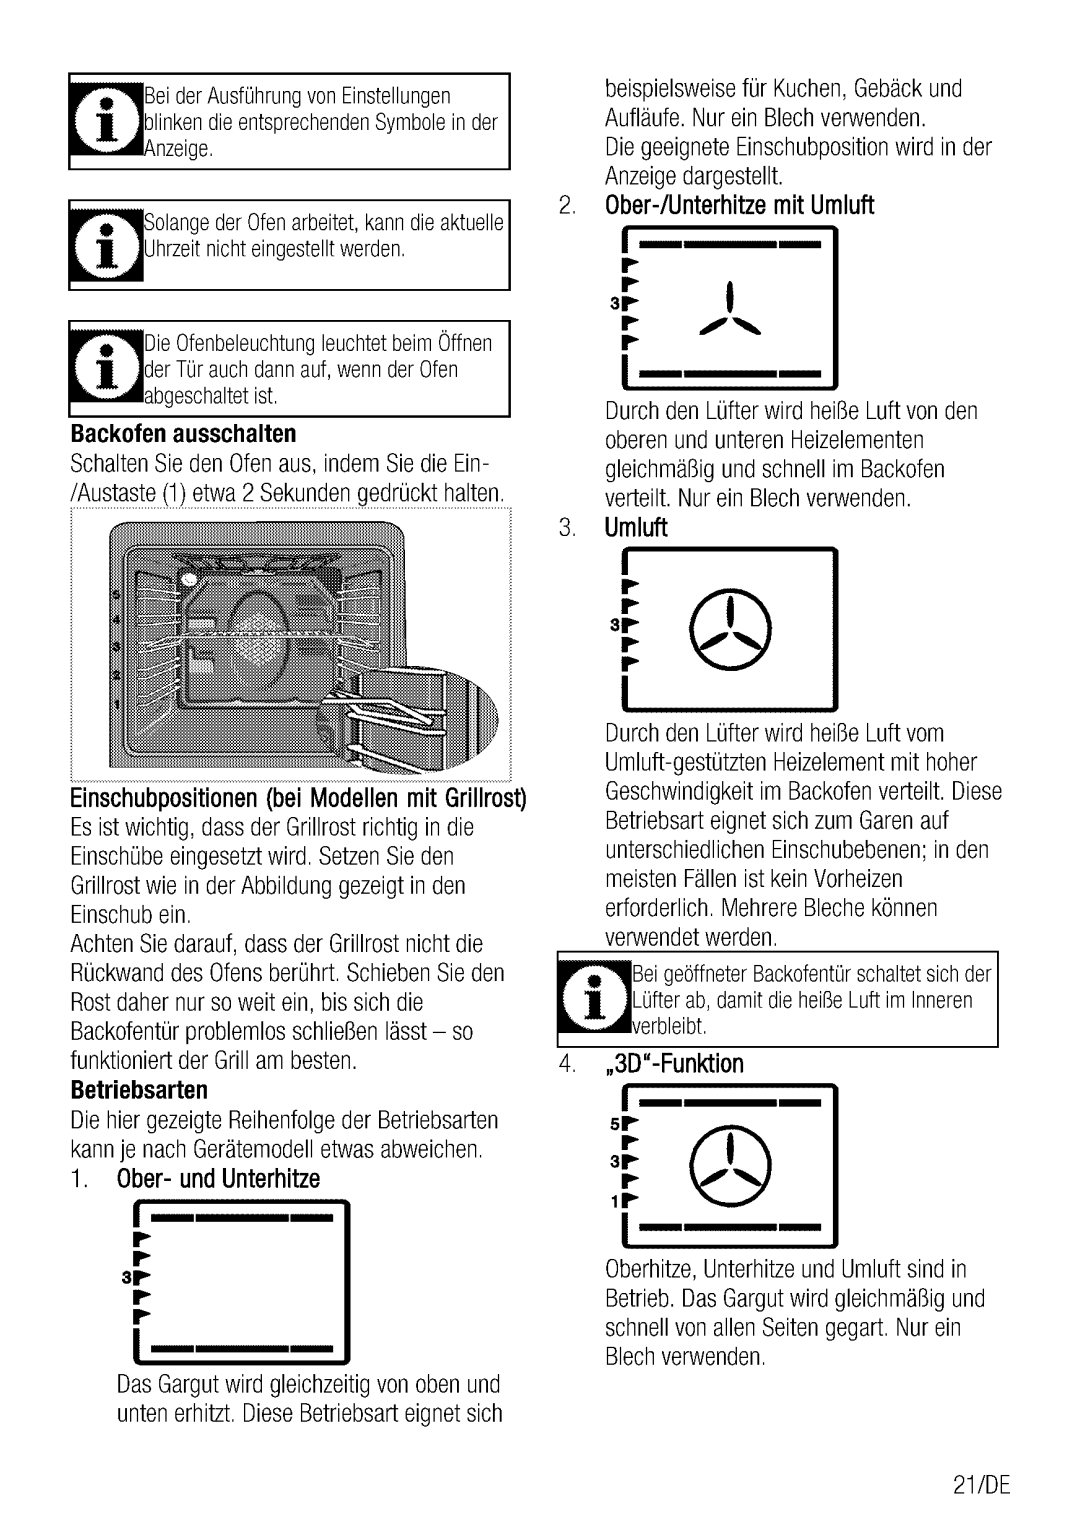 Blomberg BIO 9564 manual 